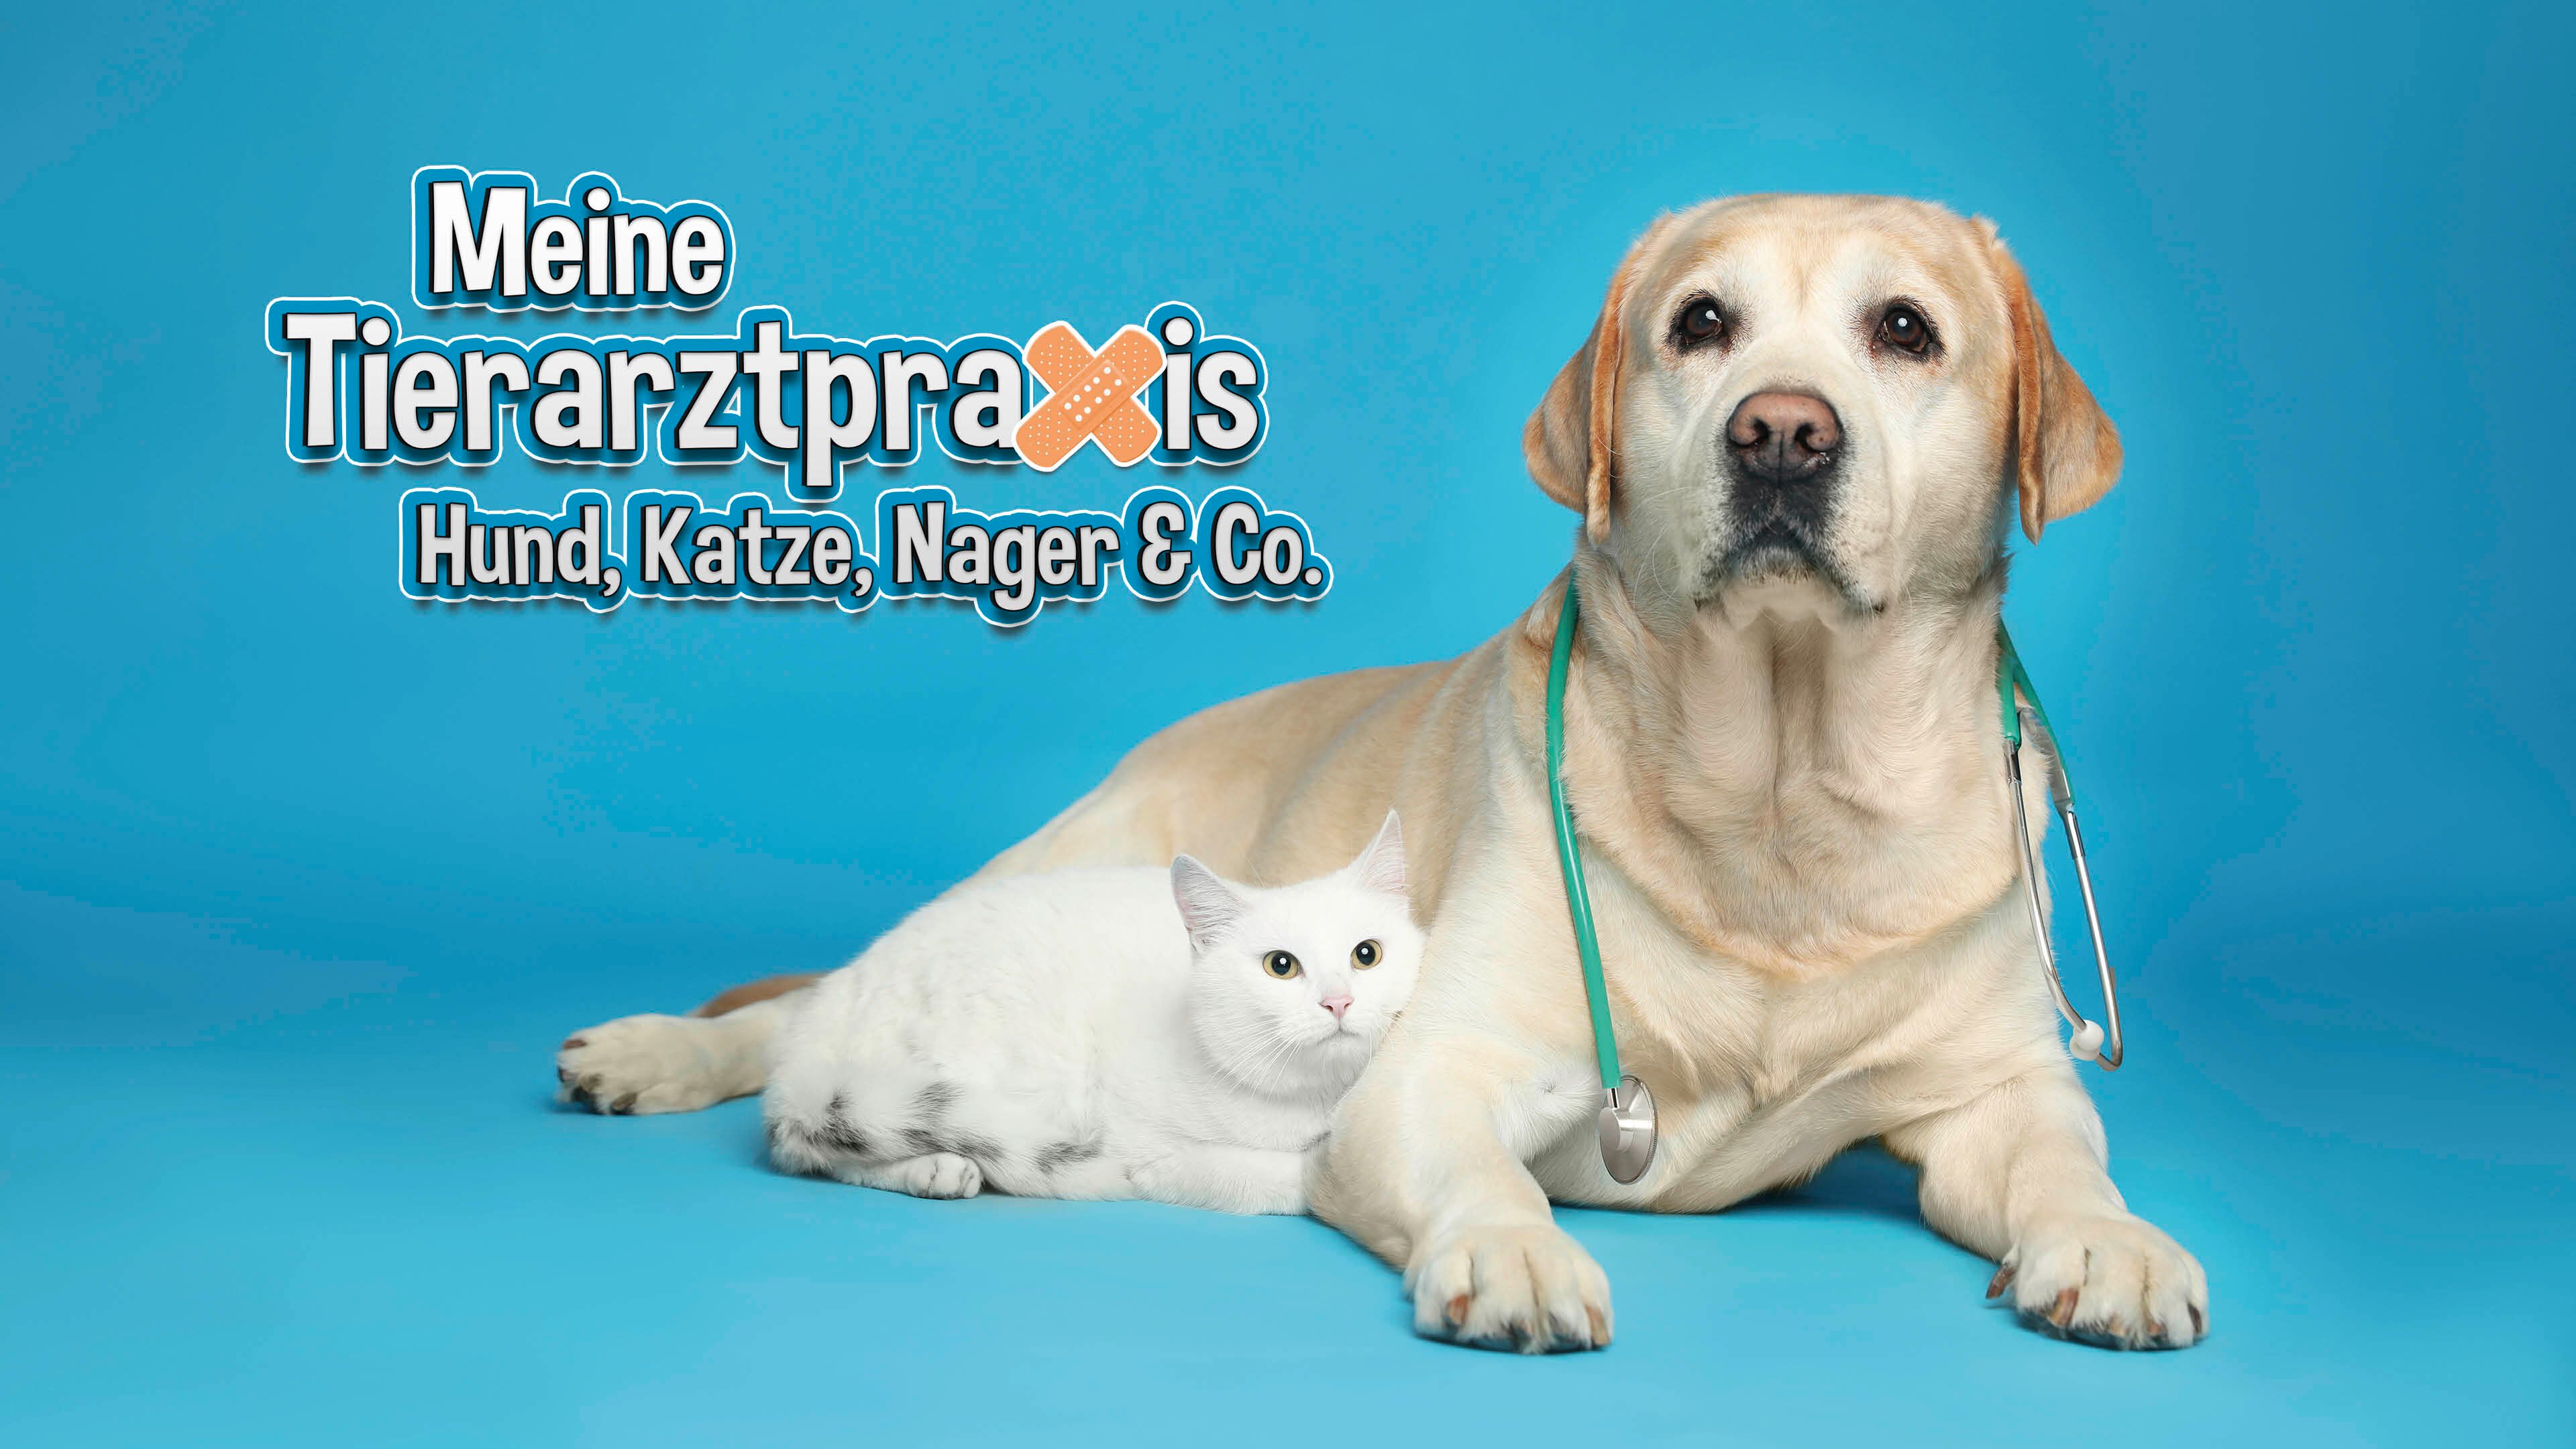 Meine Tierarztpraxis - Hund, Katze, Nager & Co.